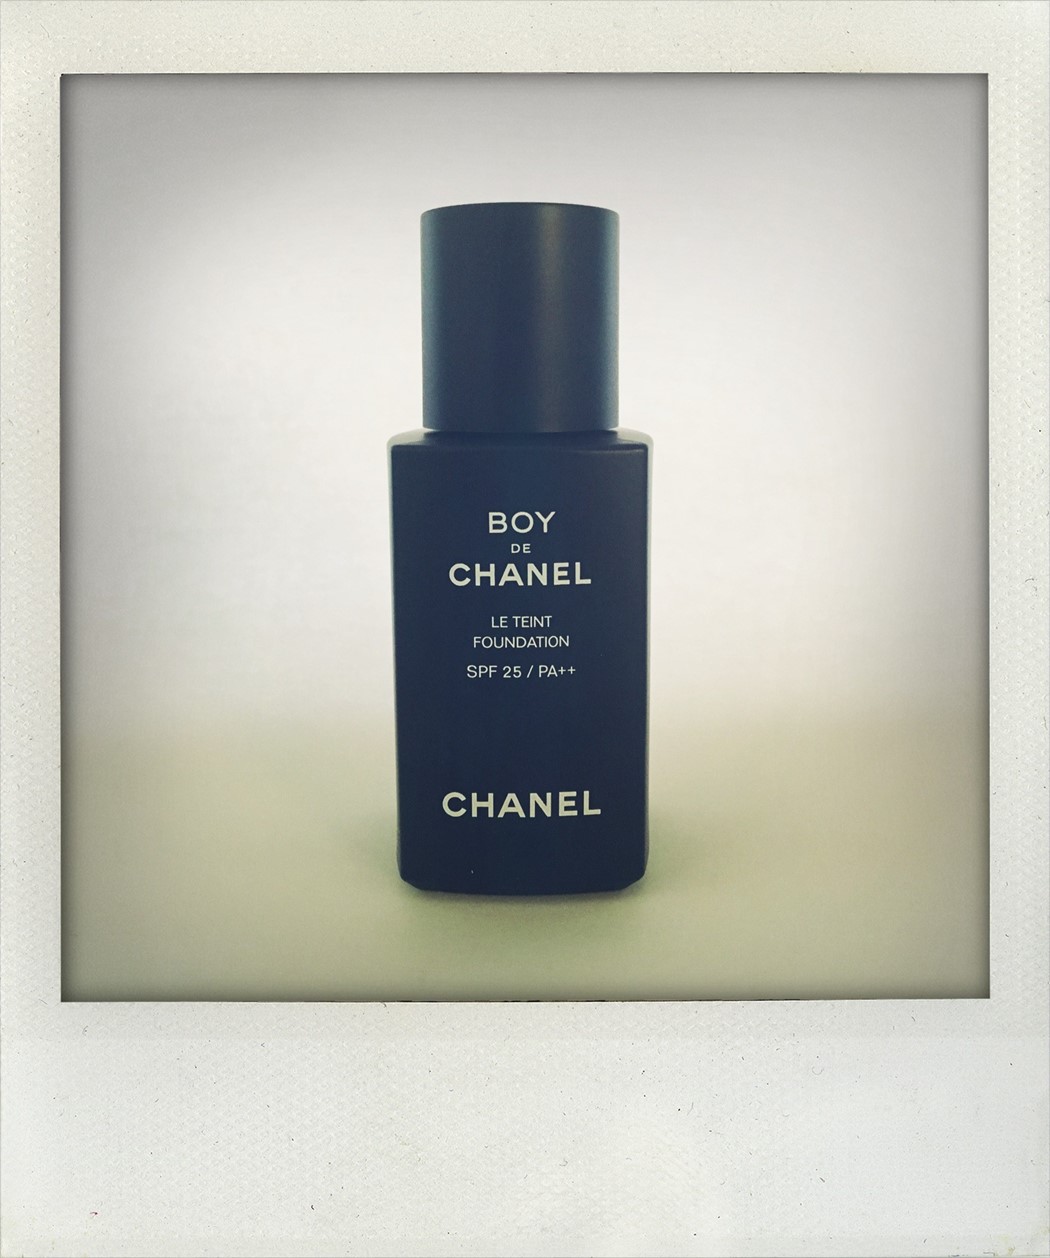 Chanel Boy de makeup men tutorial how-to mens grooming guide